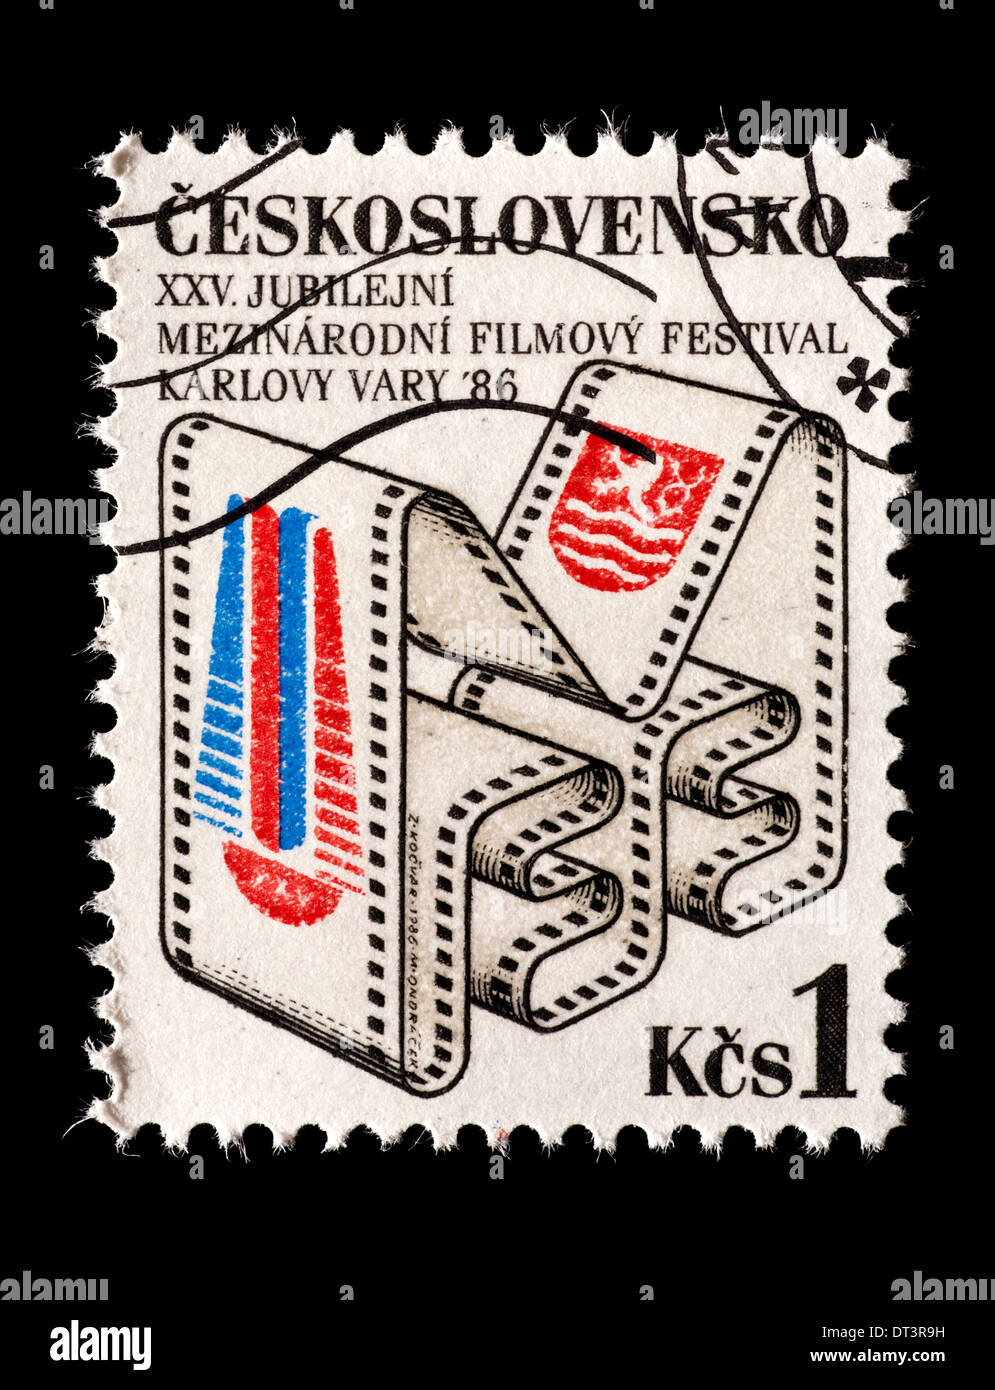 Francobollo dalla Cecoslovacchia raffigurante una striscia di pellicola, rilasciata per il Karlovy Vary International Film Festival. Foto Stock